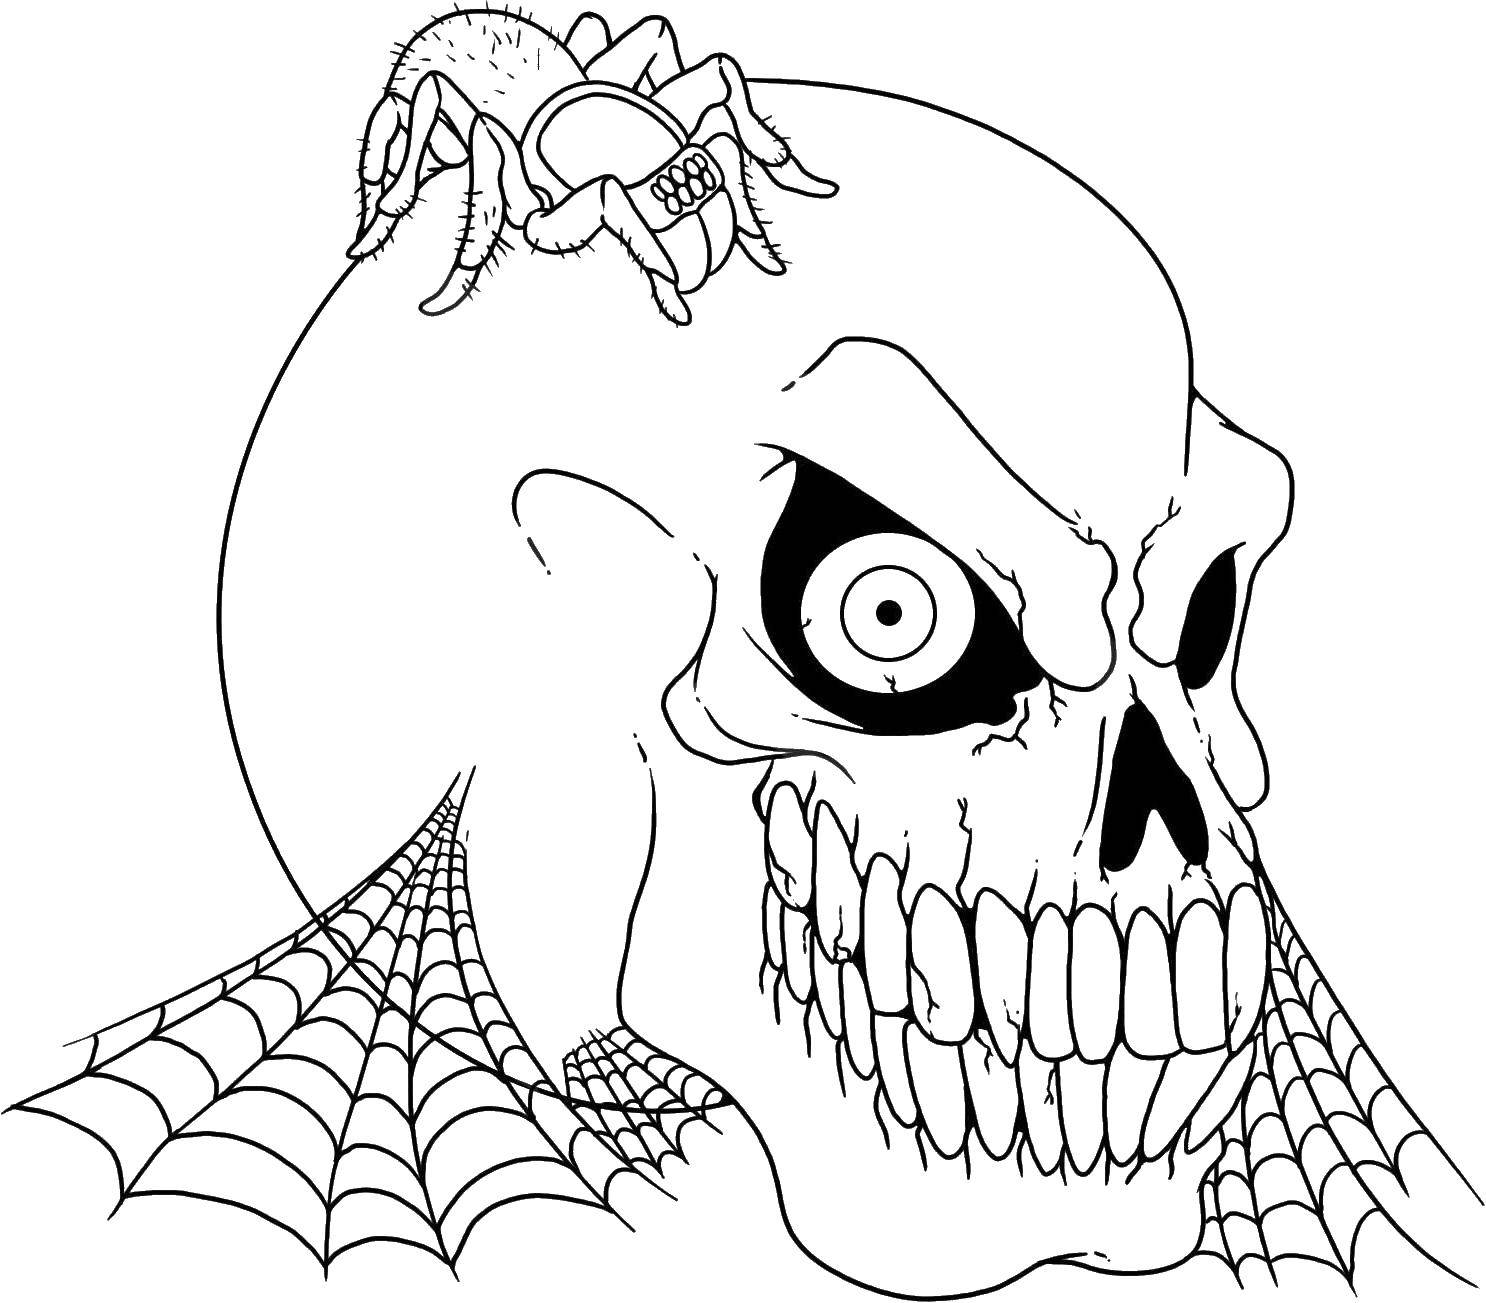 Опис: розмальовки  Череп в павутині і з павуком. Категорія: череп. Теги:  черепи, павуки, павутина.